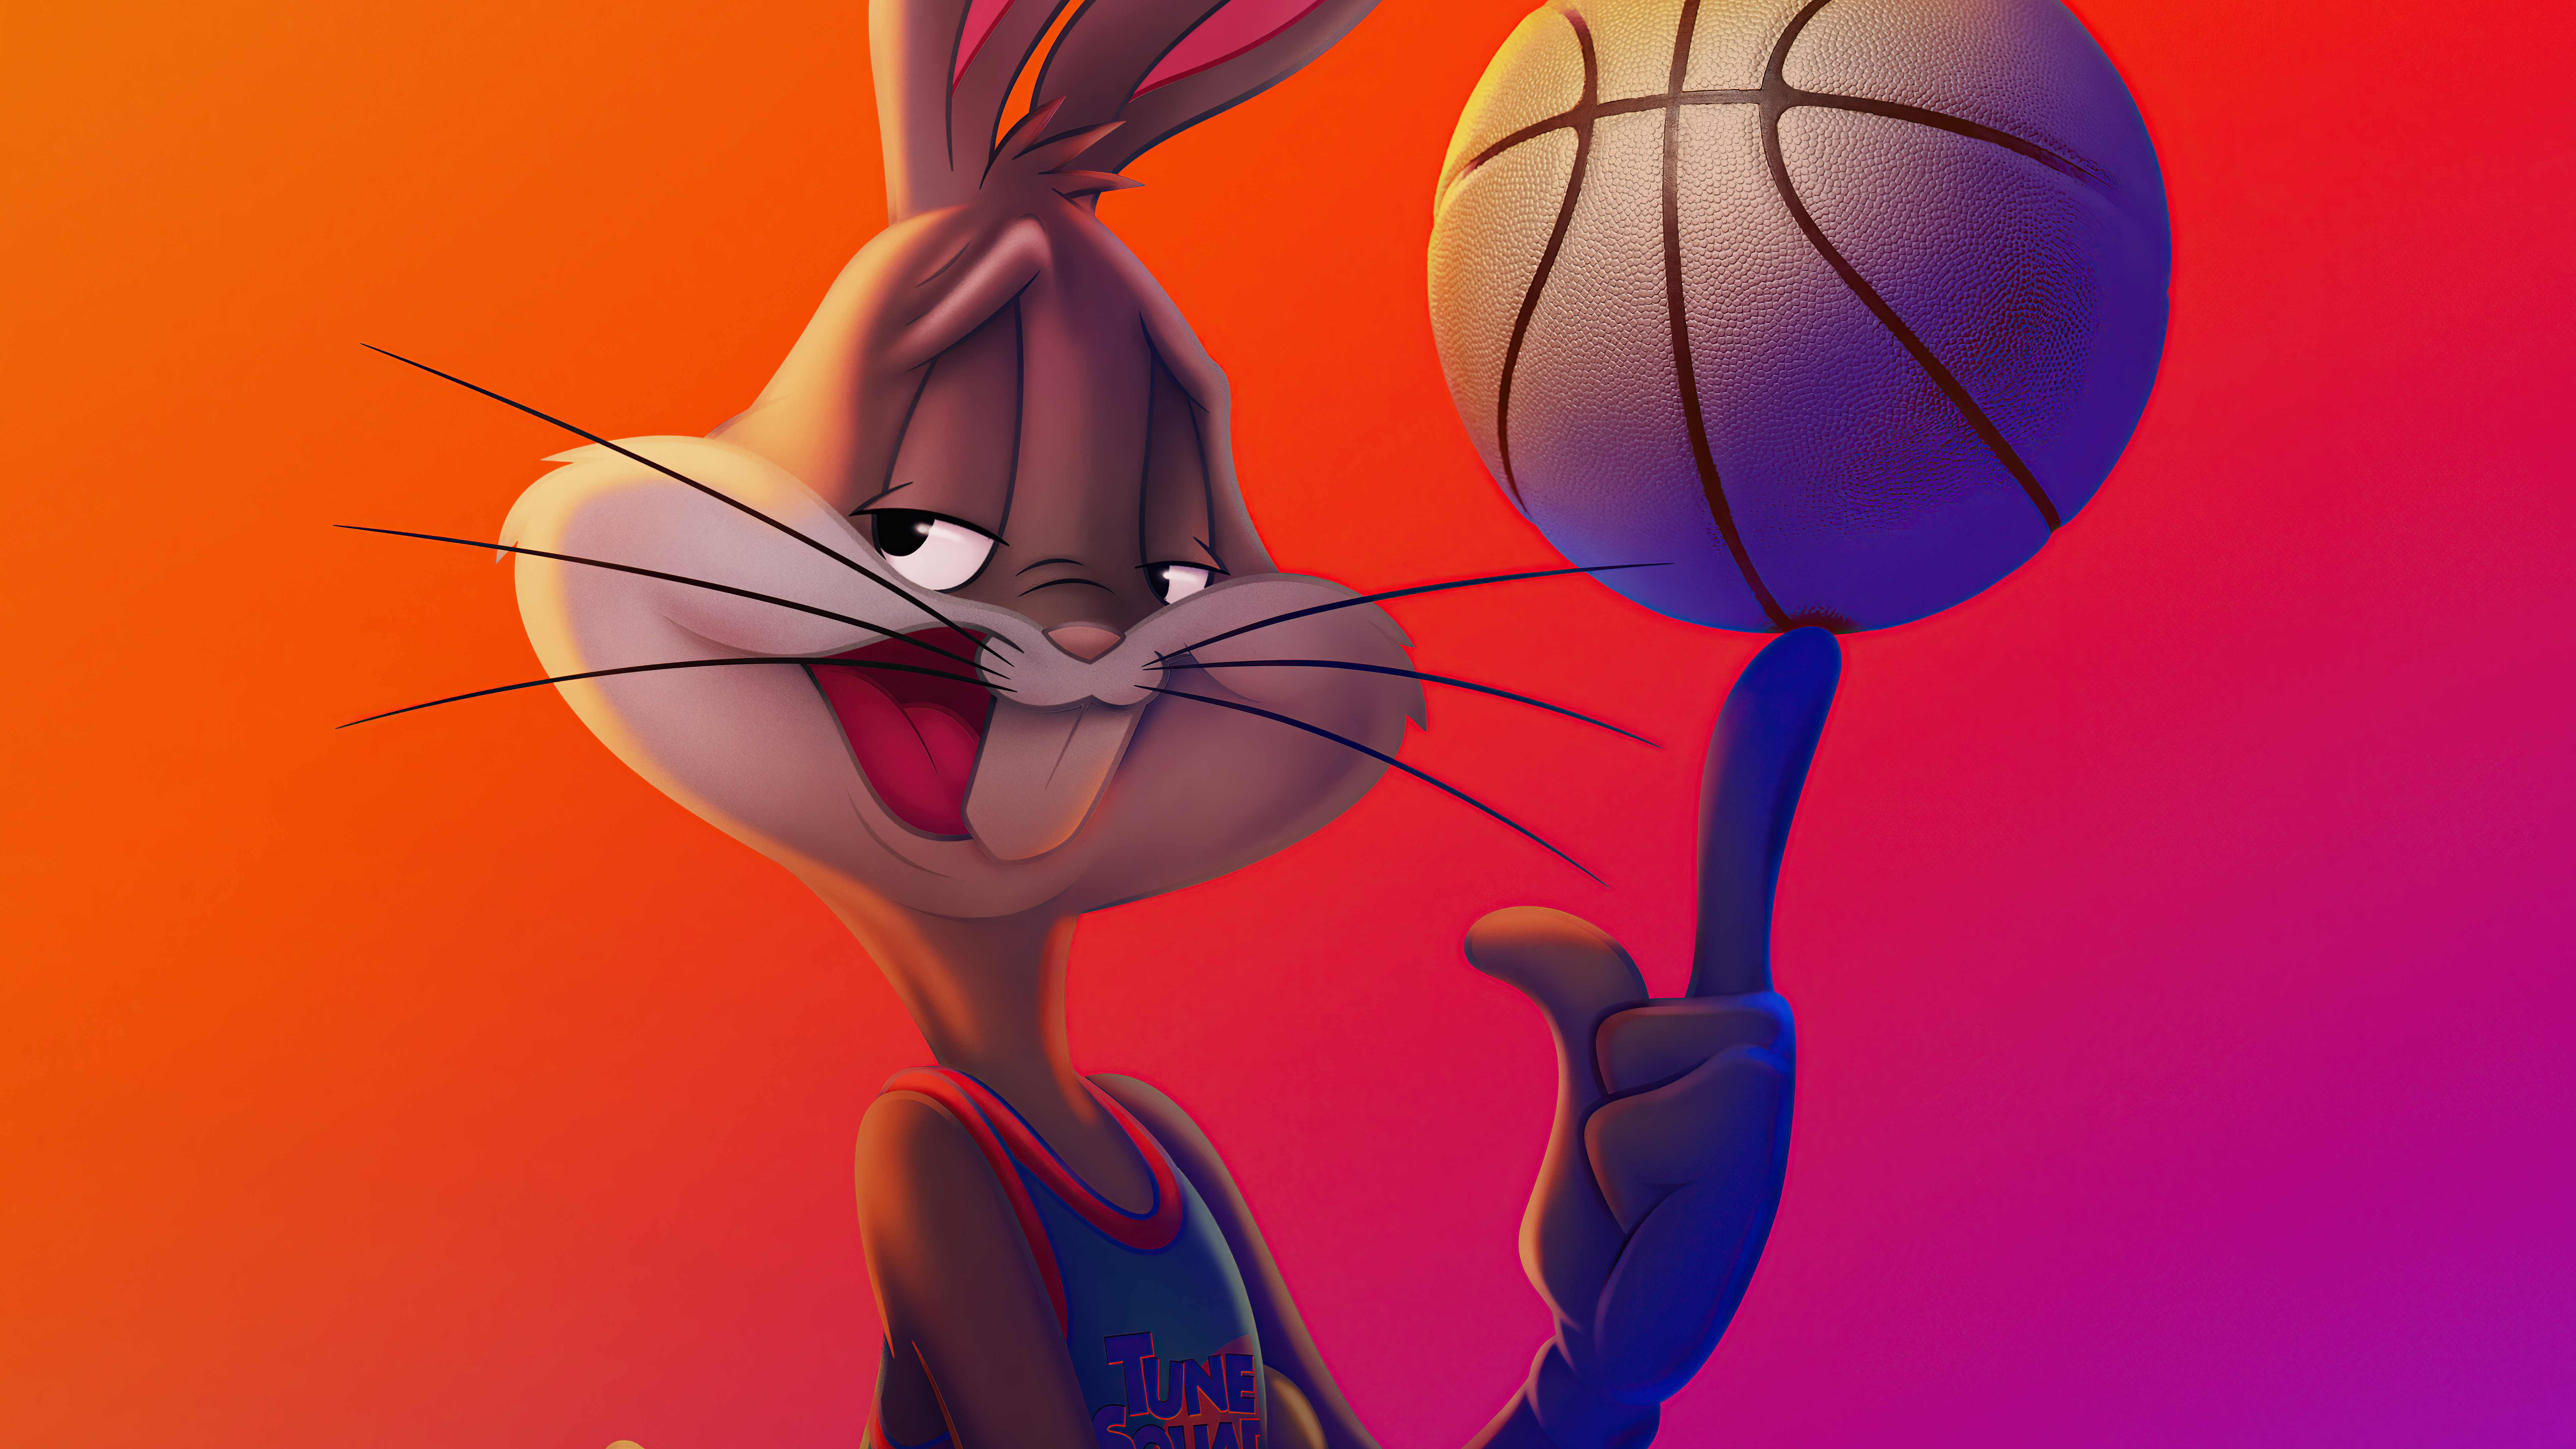 Bugs Bunny 8k Ultra HD Wallpaper